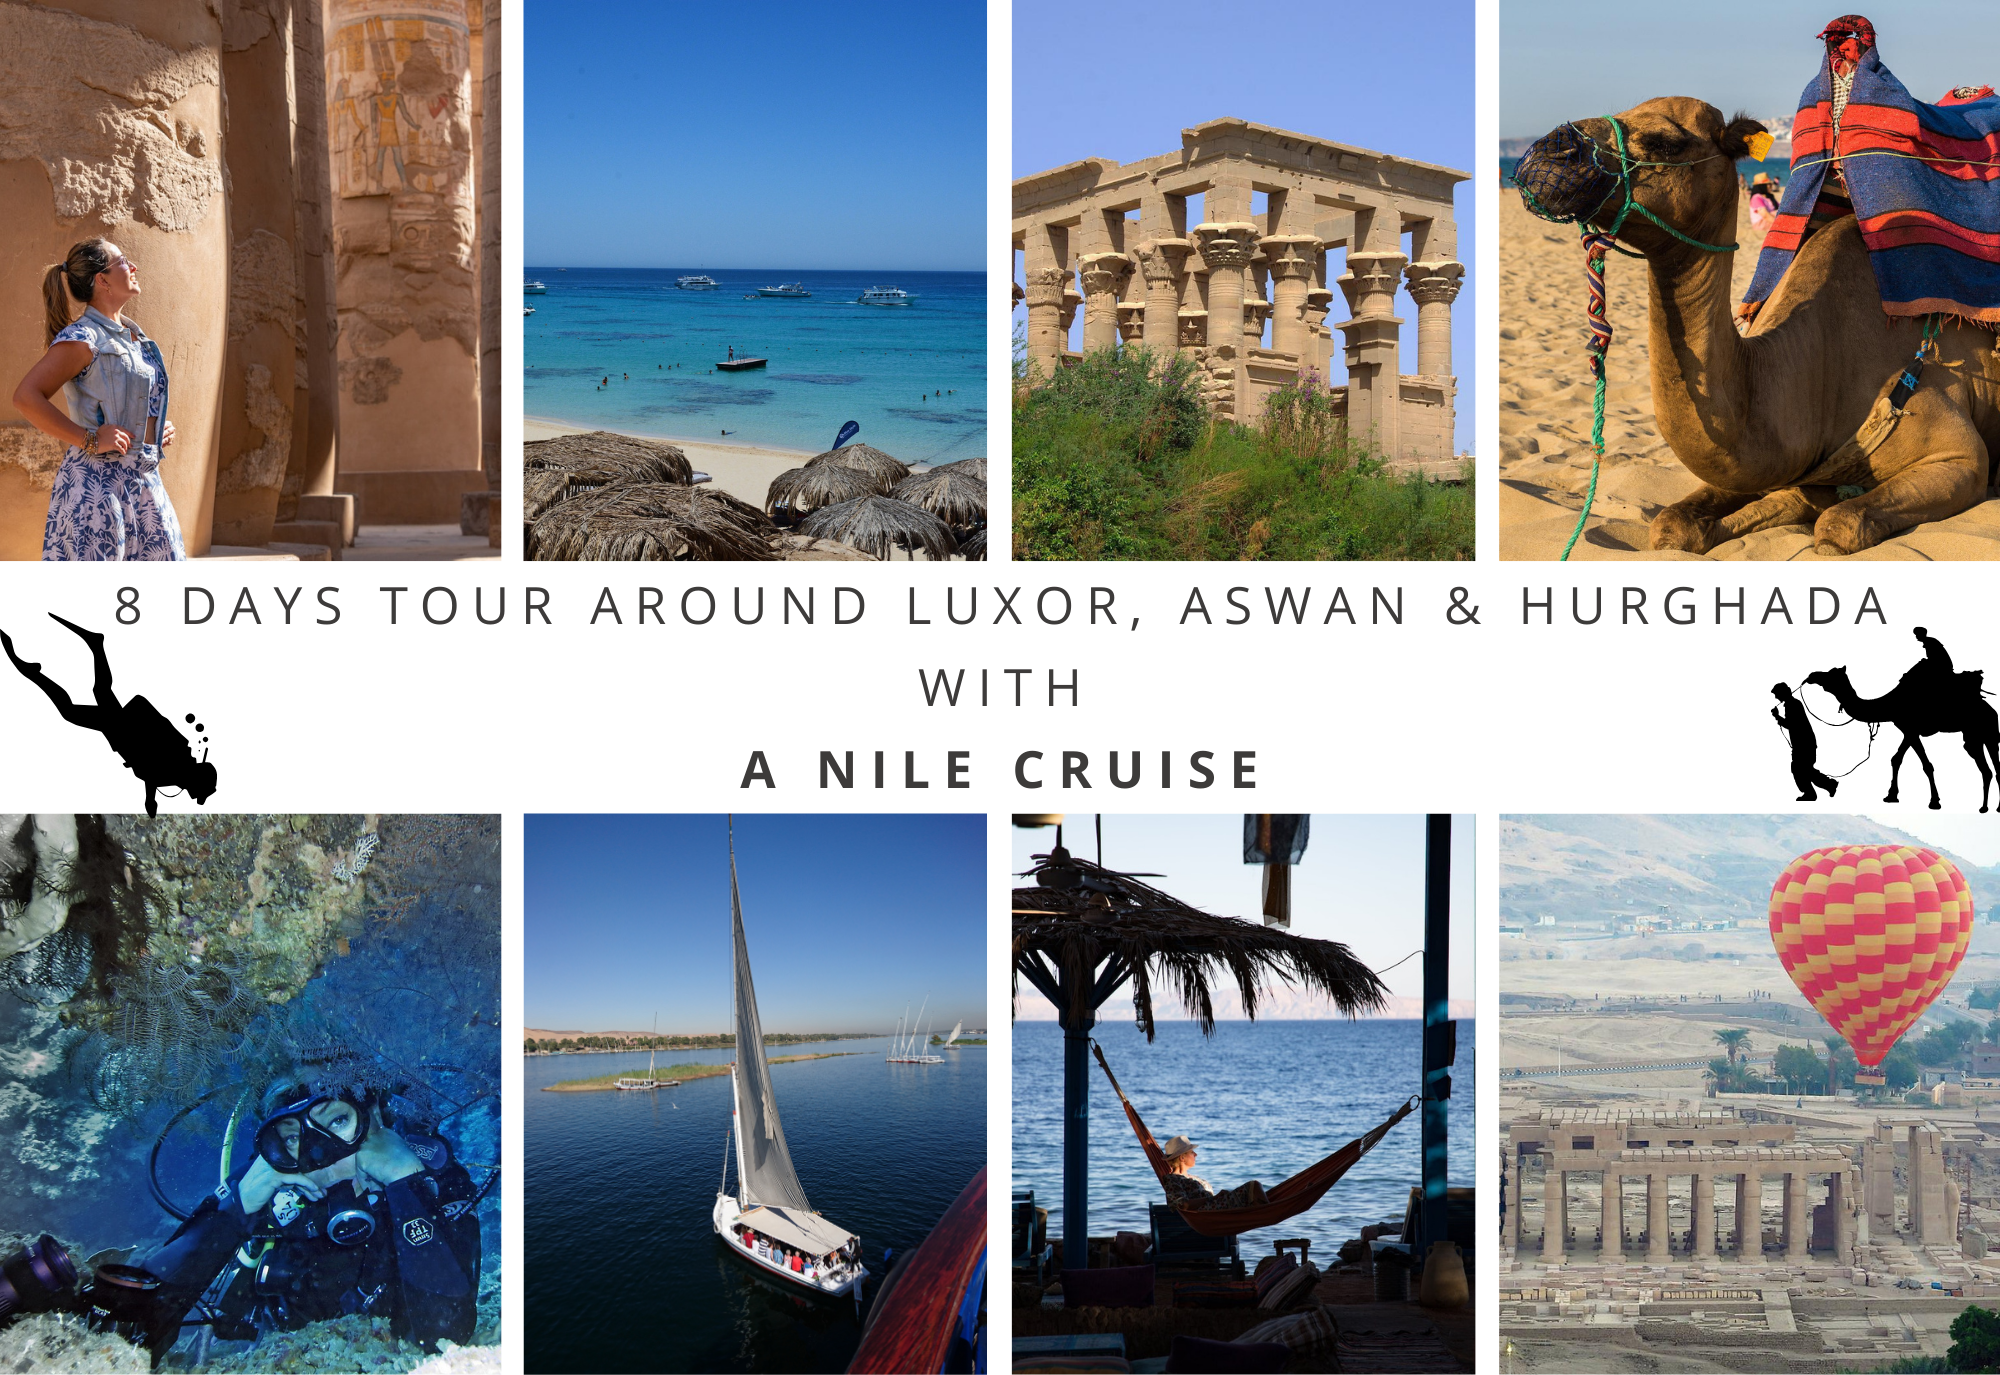 8 Days Tour around Luxor, Aswan & Hurghada with a Nile Cruise